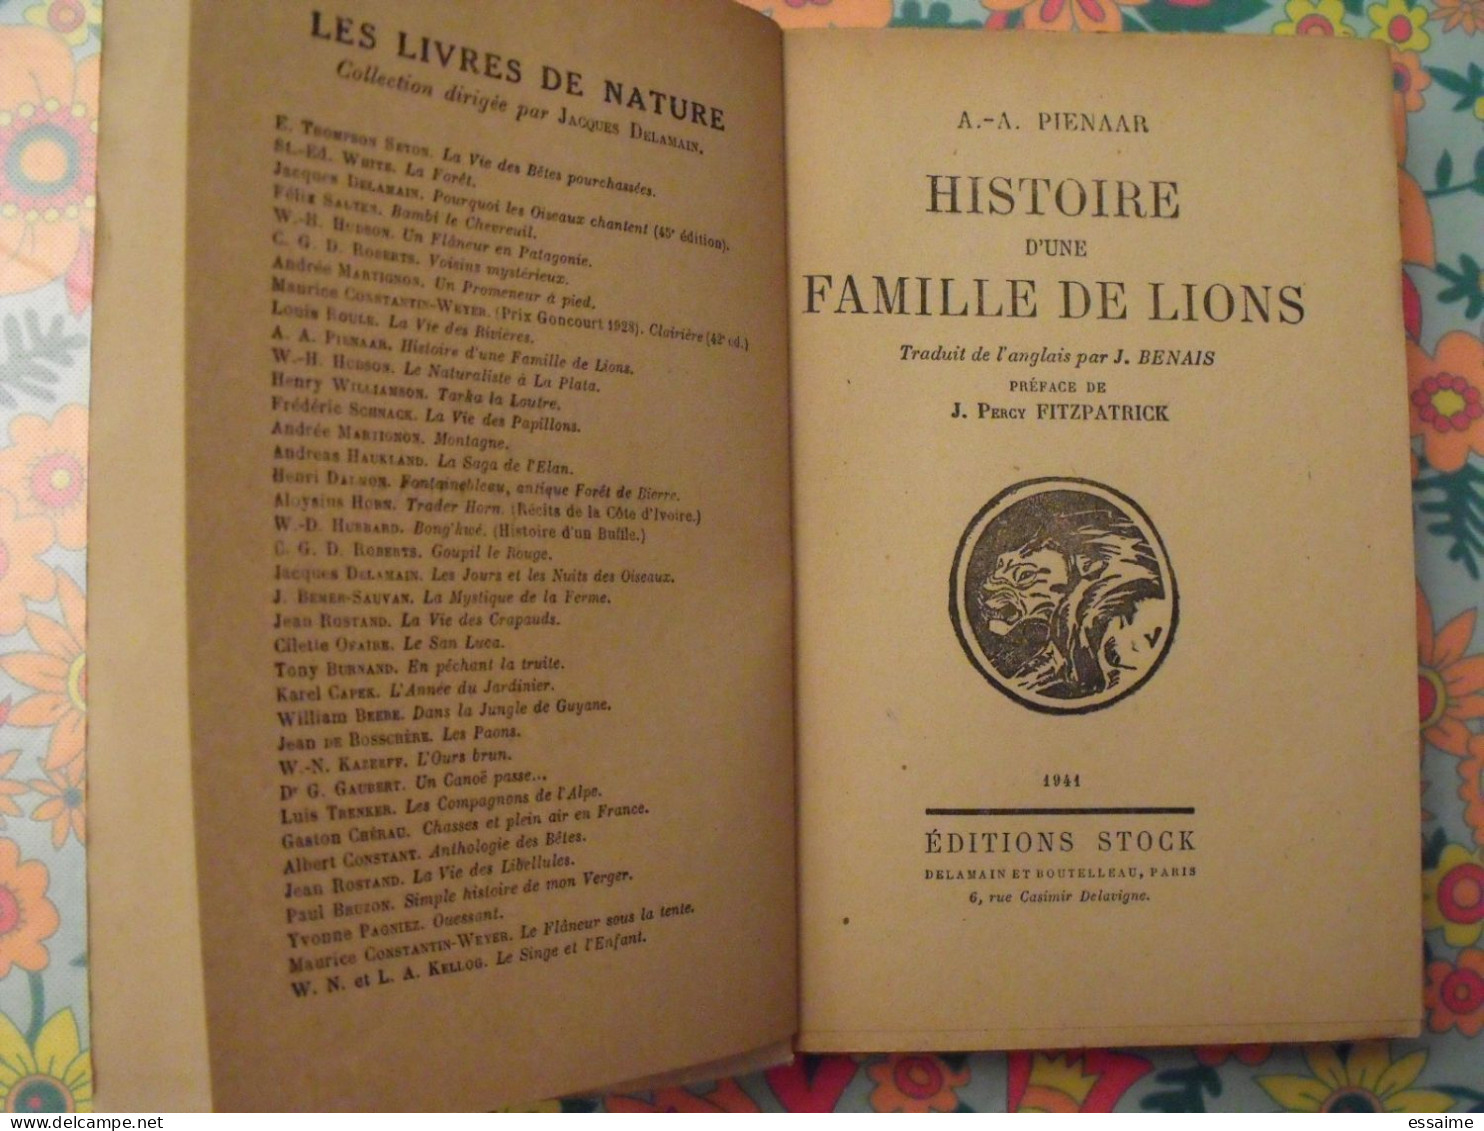 Histoire D'une Famille De Lions. Pienaar. Stock 1941. Delamain. Fitzpatrick - Adventure